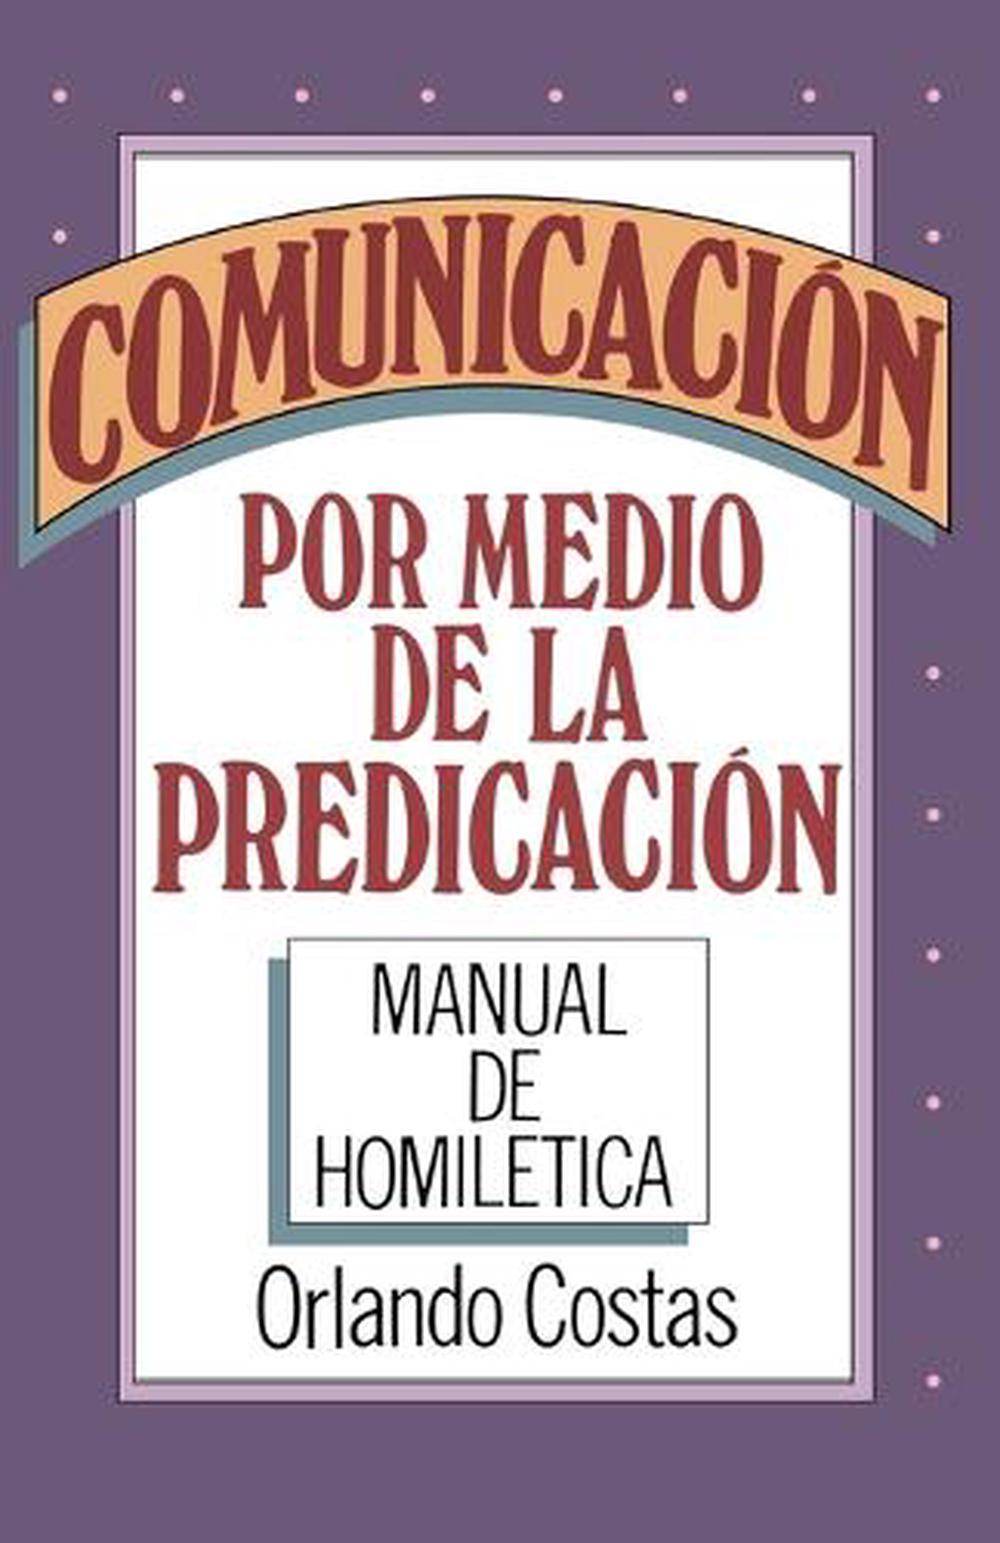 Comunicacion Por Medio de la Predicacion by Orlando E. Costas